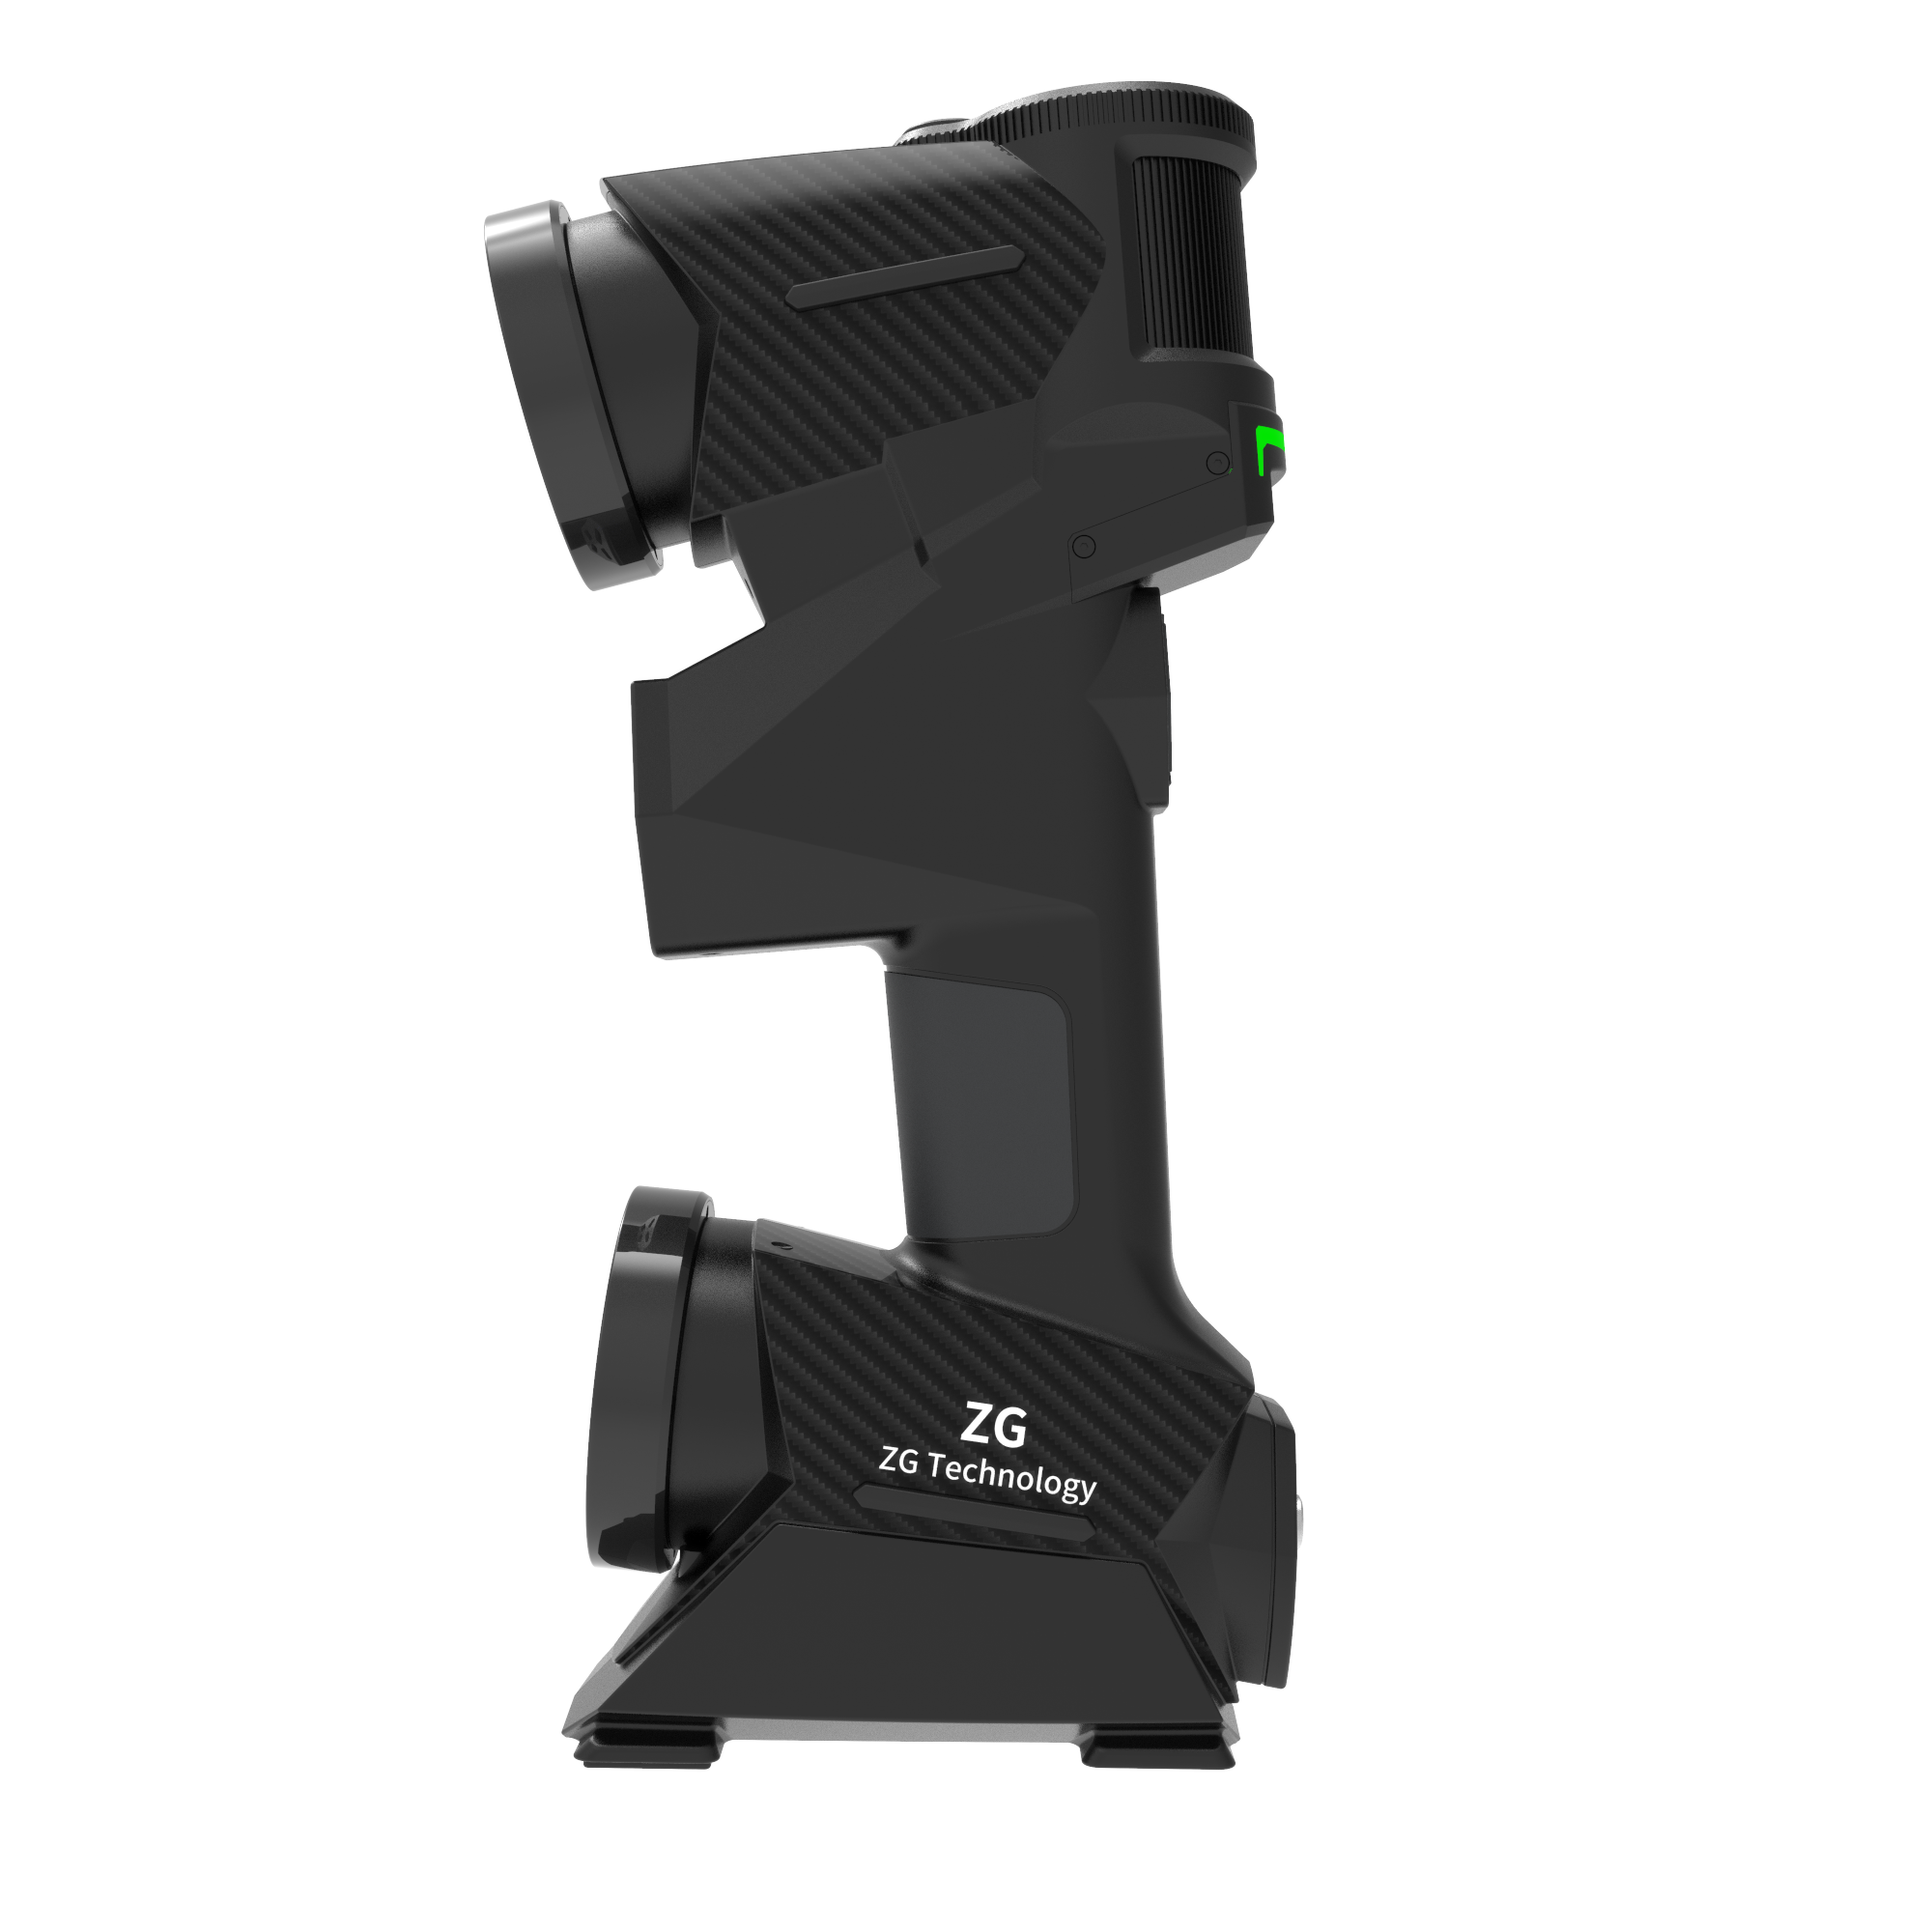 Scanner 3D ad alta precisione senza marcatori MarvelScan Tracker per misurazioni 3D